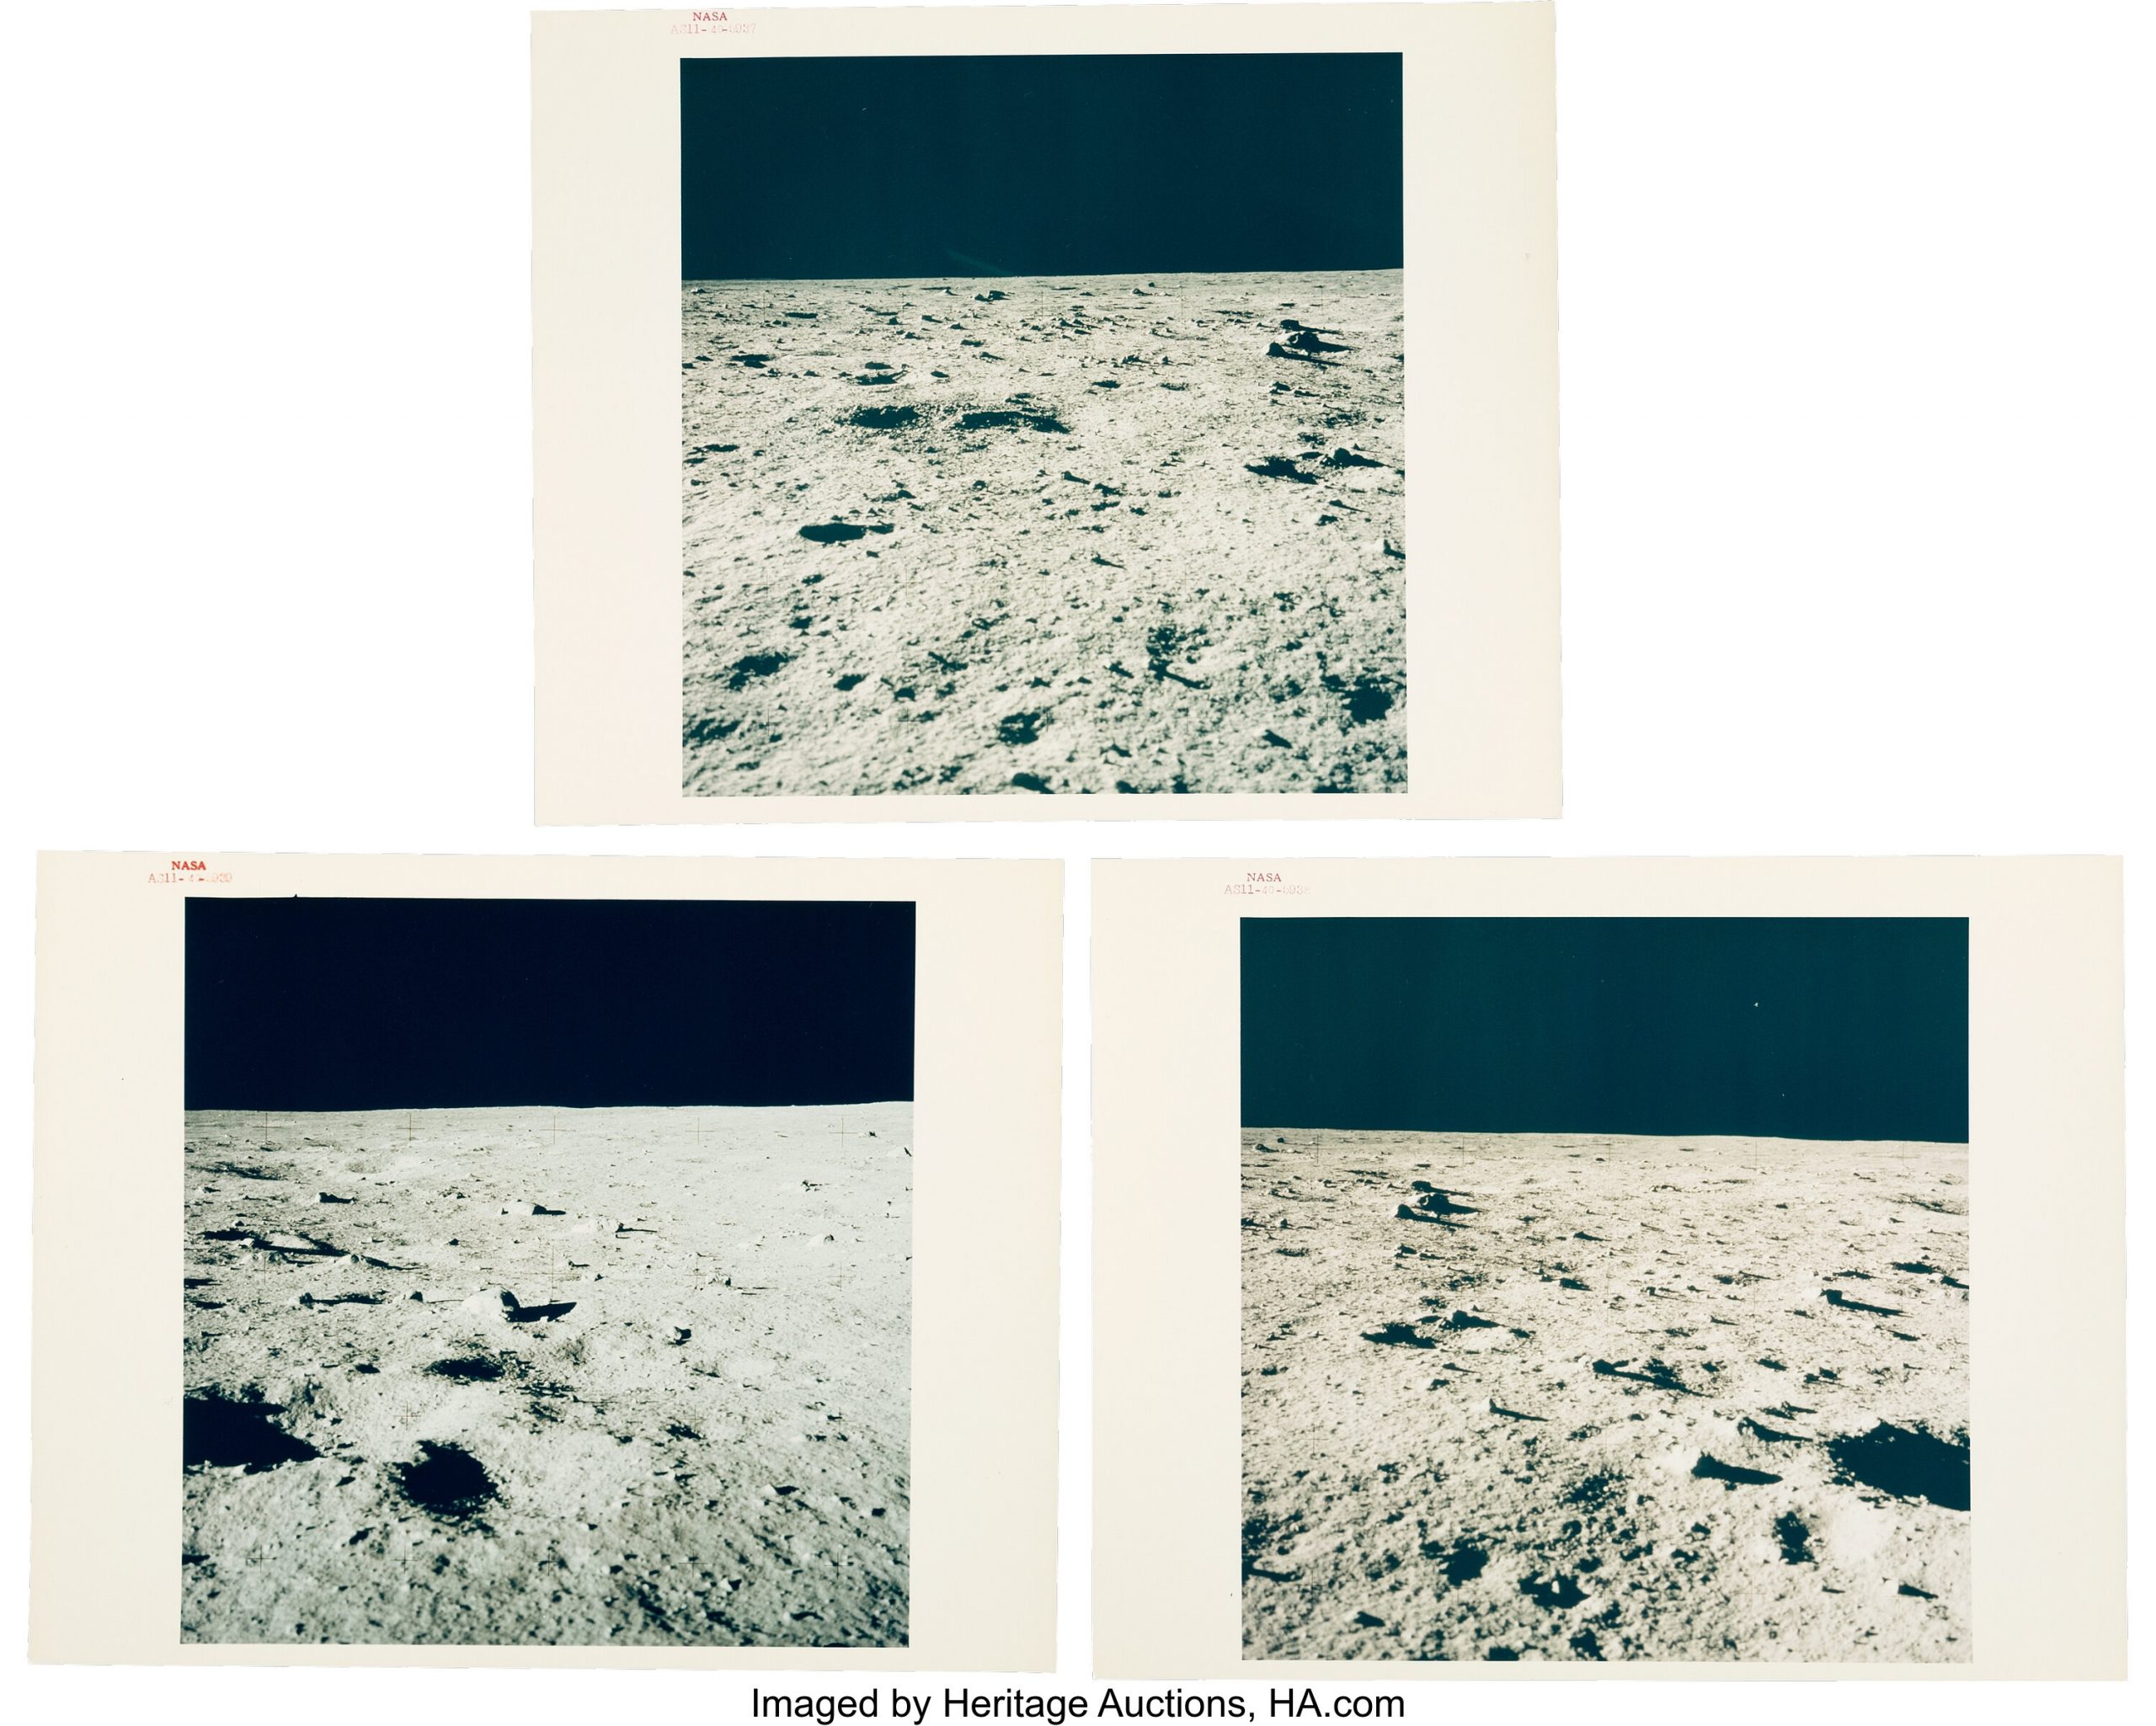 Những bức ảnh quý giá từ sự kiện sứ mệnh Apollo của NASA đang được đấu giá